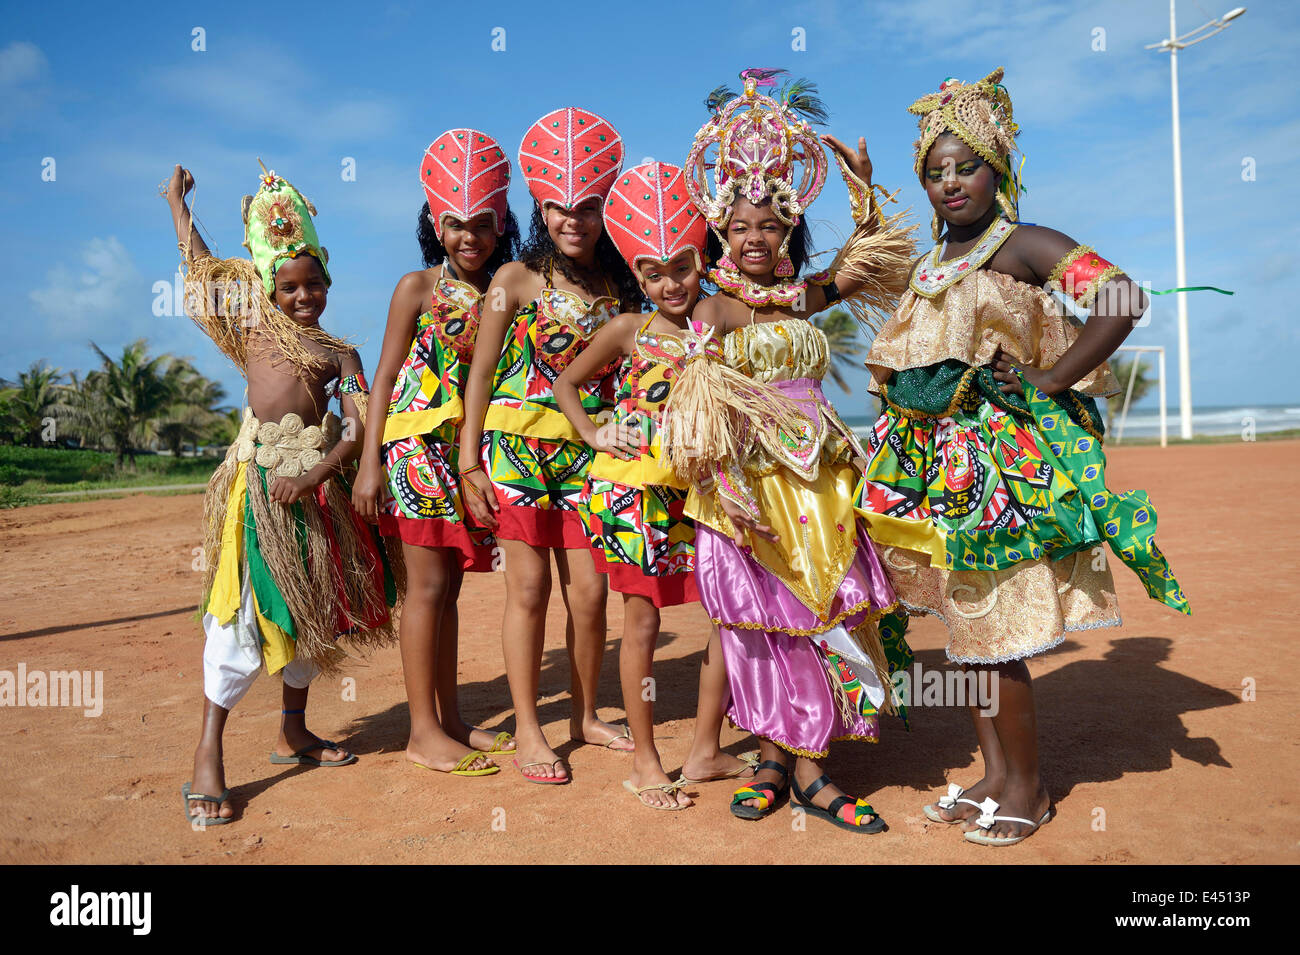 Habillés de couleurs vives les enfants d'un groupe de musique afro-brésilien traditionnel, Salvador, Bahia, Brésil Banque D'Images